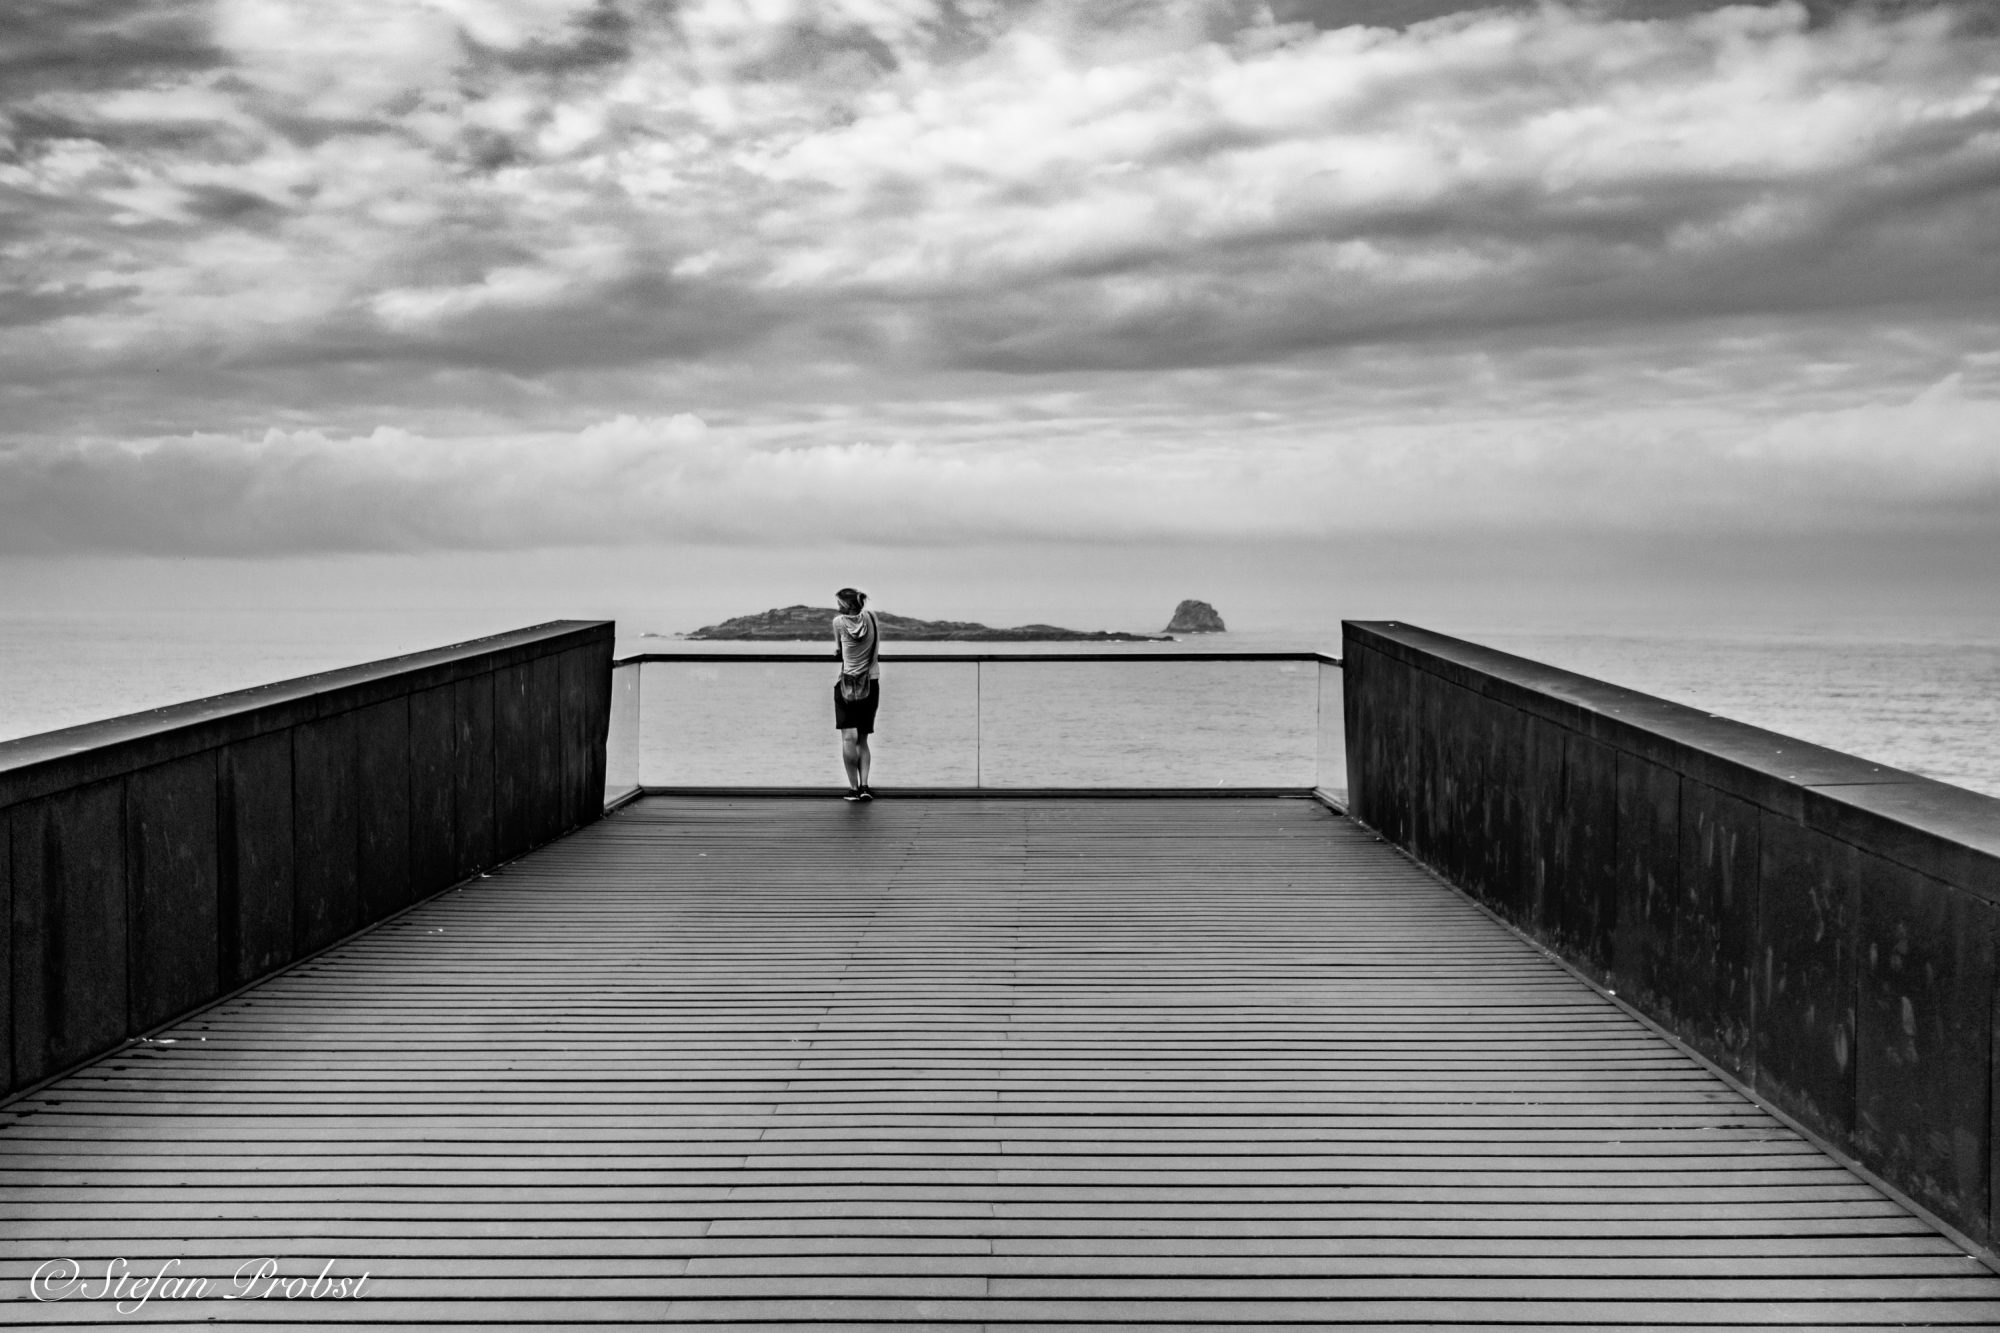 Schwarz-weiß Bild einer Frau auf einem Eisensteg der über dem Meer schwebt.